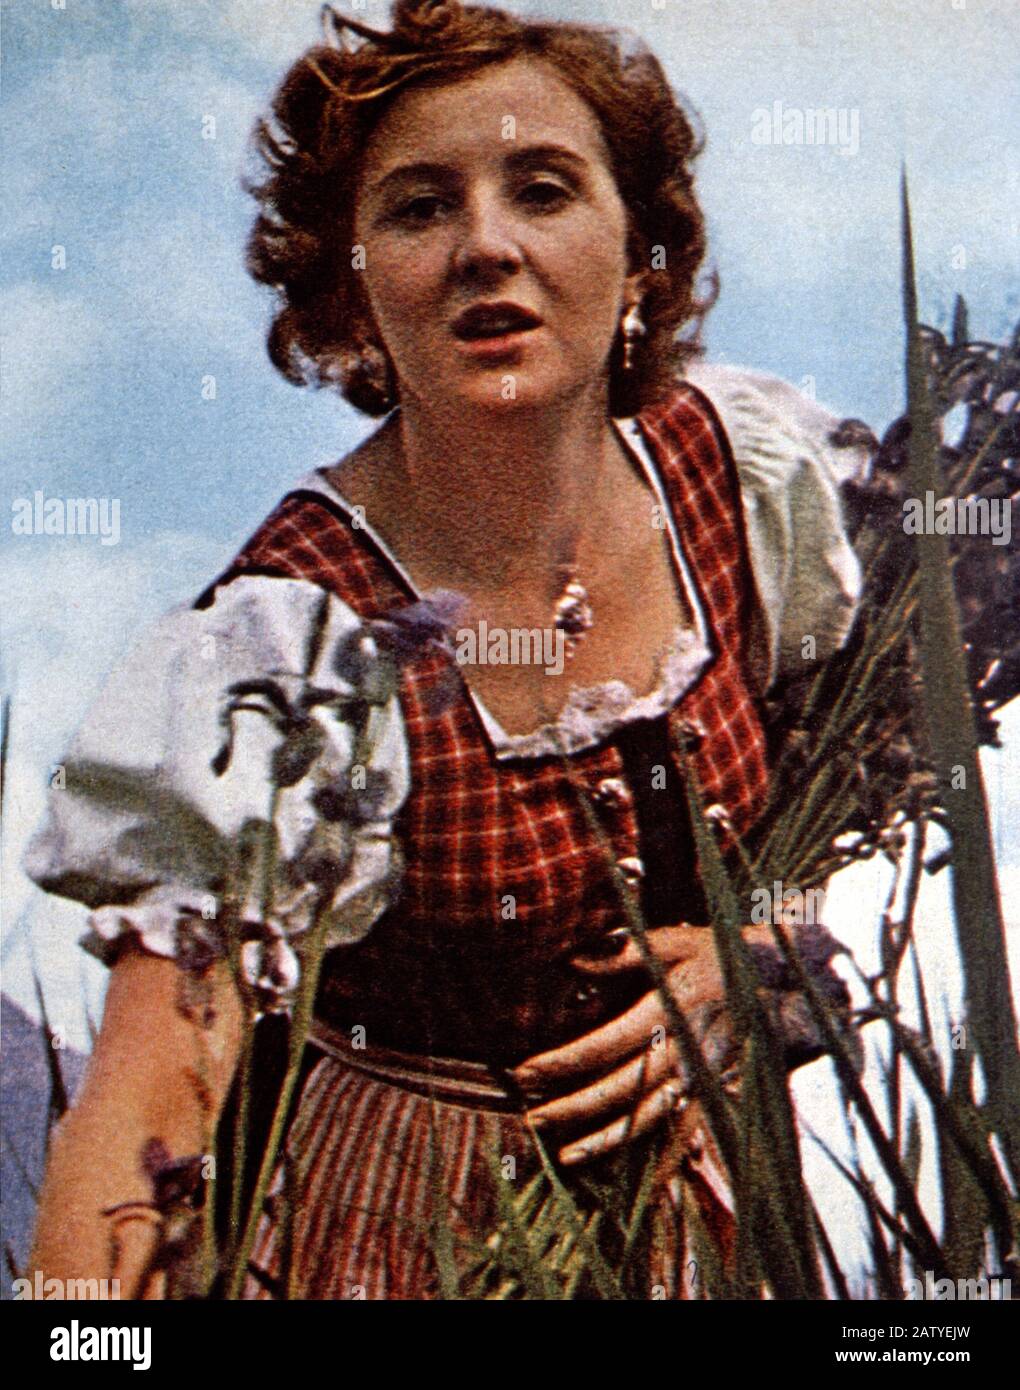 1930 , ALEMANIA : EVA BRAUN , vestido bávaro , en Berchtesgaden - foto tomada de una película personal de 16 mm filmada por ADOLF HITLER himsel Foto de stock